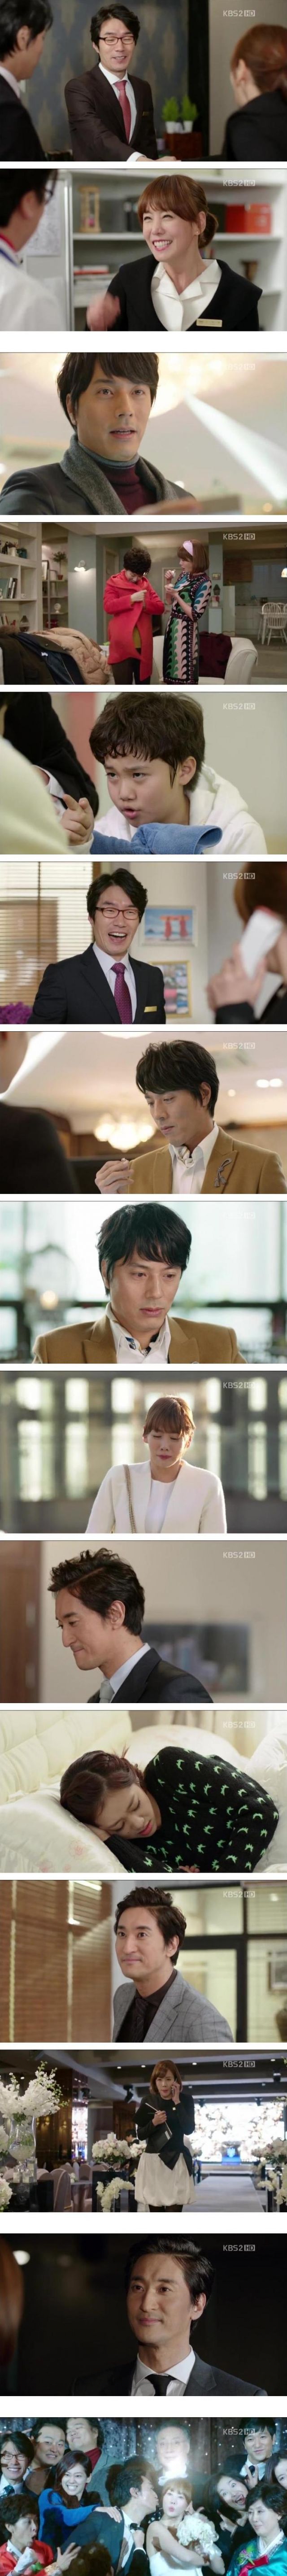 episode 18 captures for the Korean drama 'Ooh La La Couple'